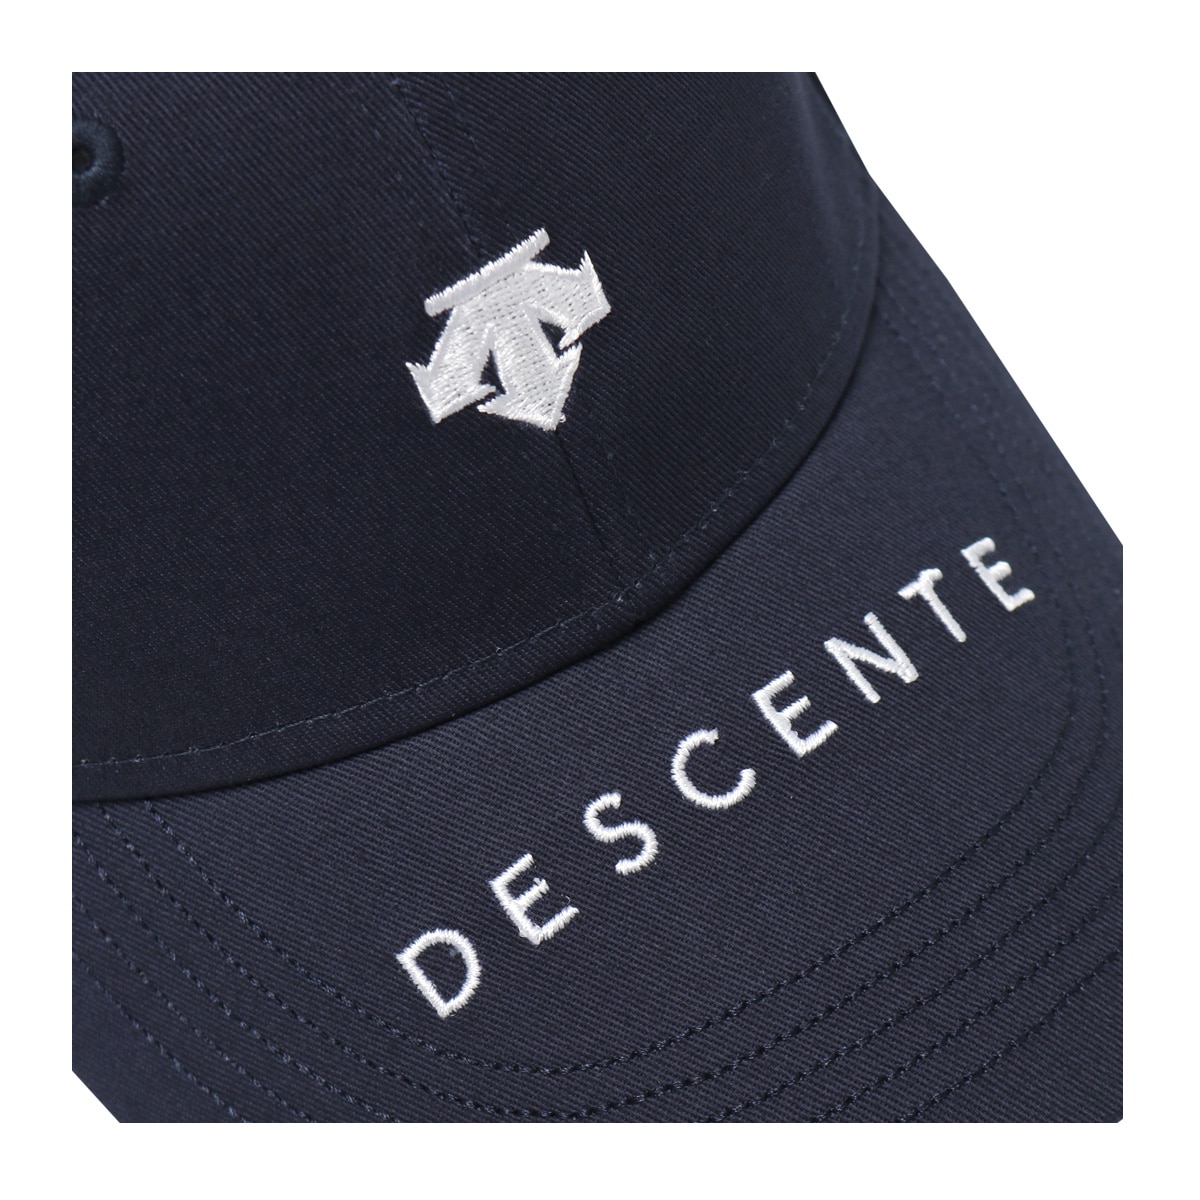 デサント ゴルフ キャップ 帽子 ロゴ刺繍 レディース DGCVJC00 DESCENTE 吸汗速乾 手洗い可 抗菌防臭 サイズ調節可能